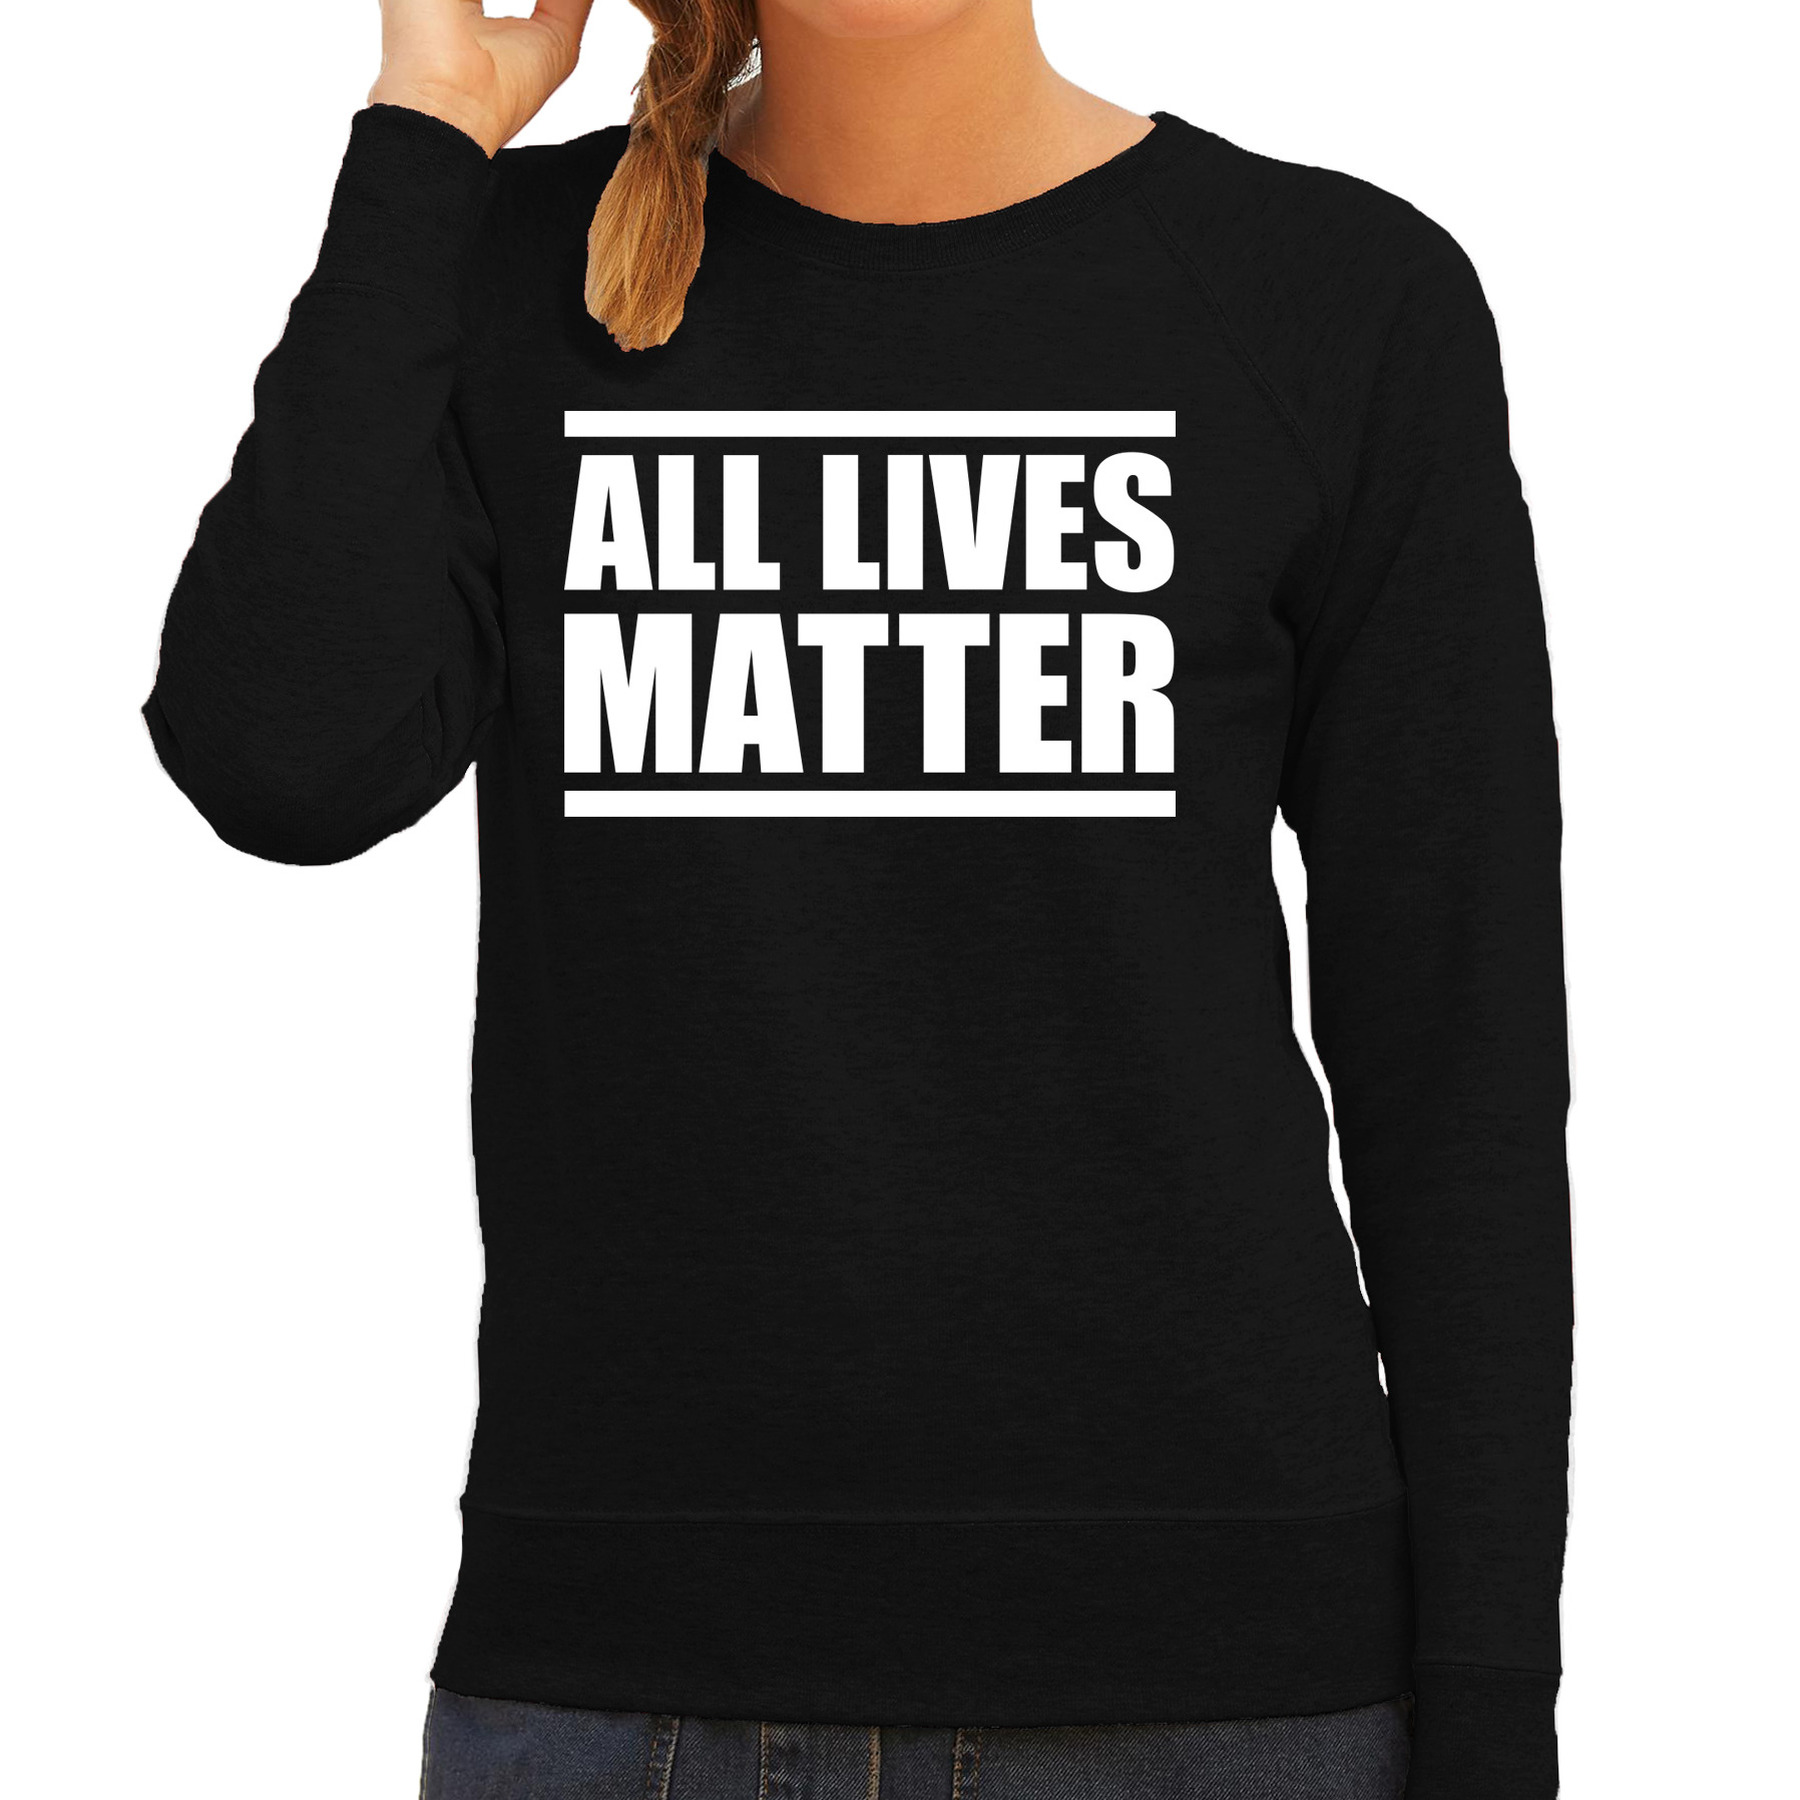 All lives matter demonstratie-protest sweater zwart voor dames